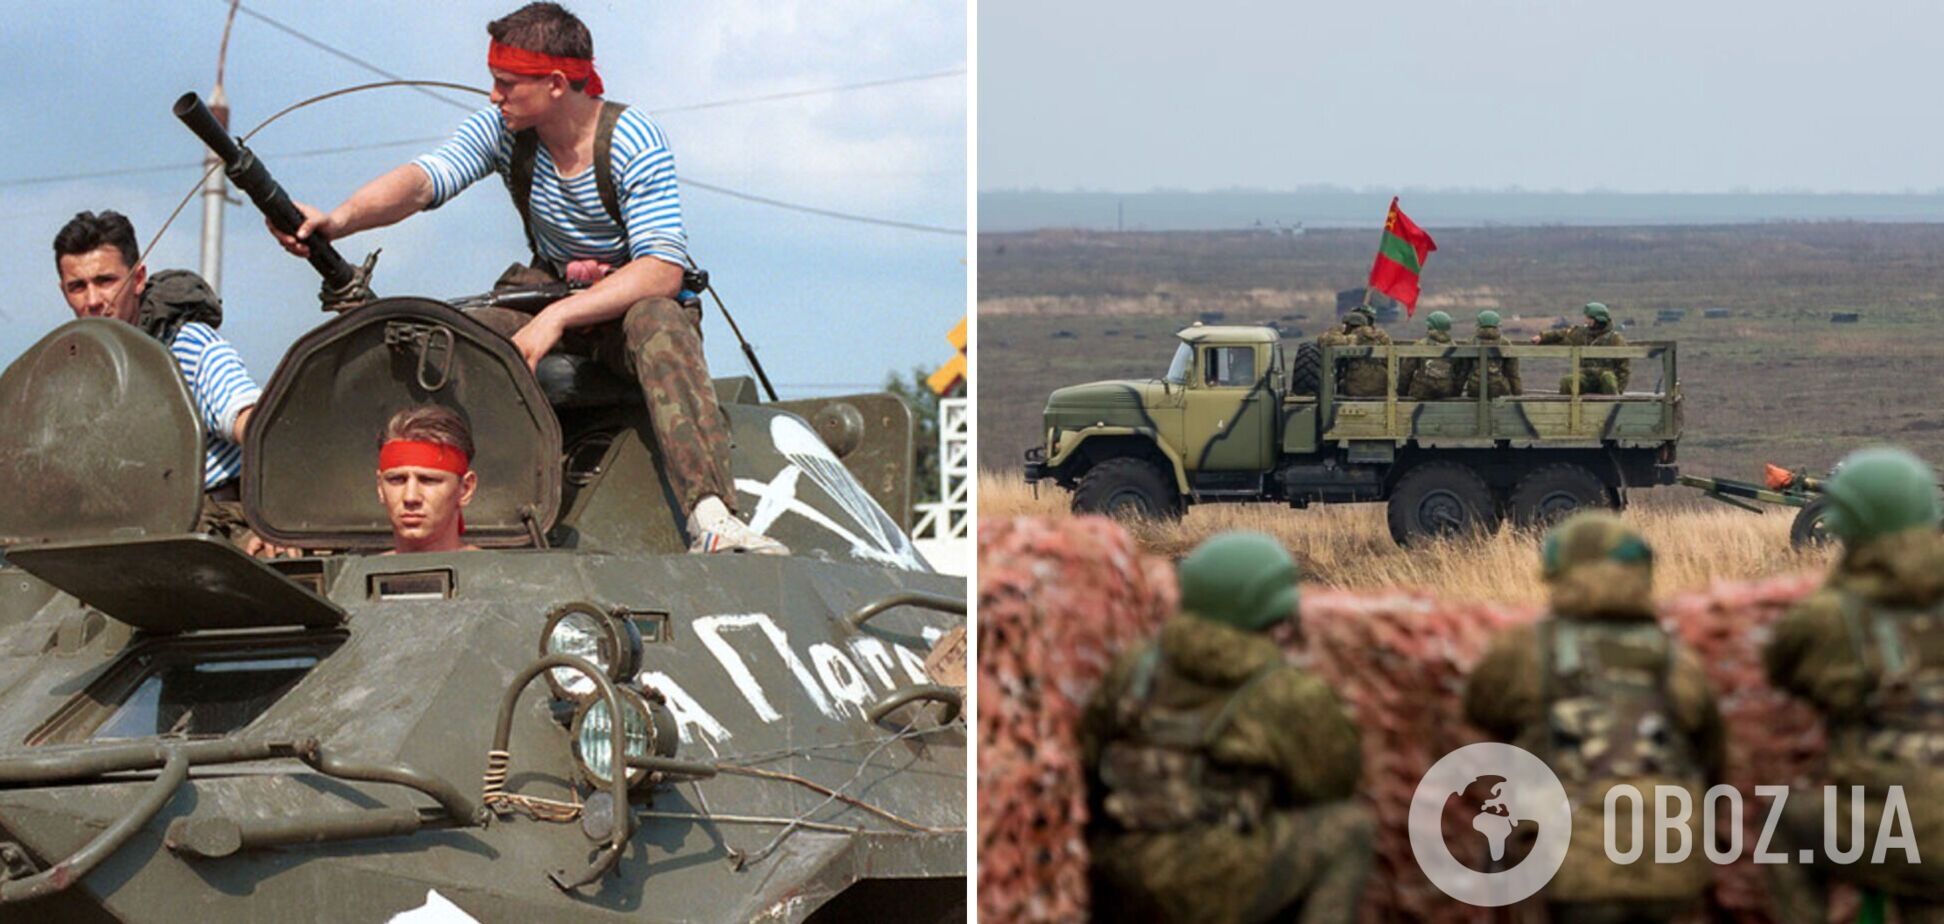 Подразделения из Приднестровья оказались не готовыми к войне против Украины: ФСБ провела проверку